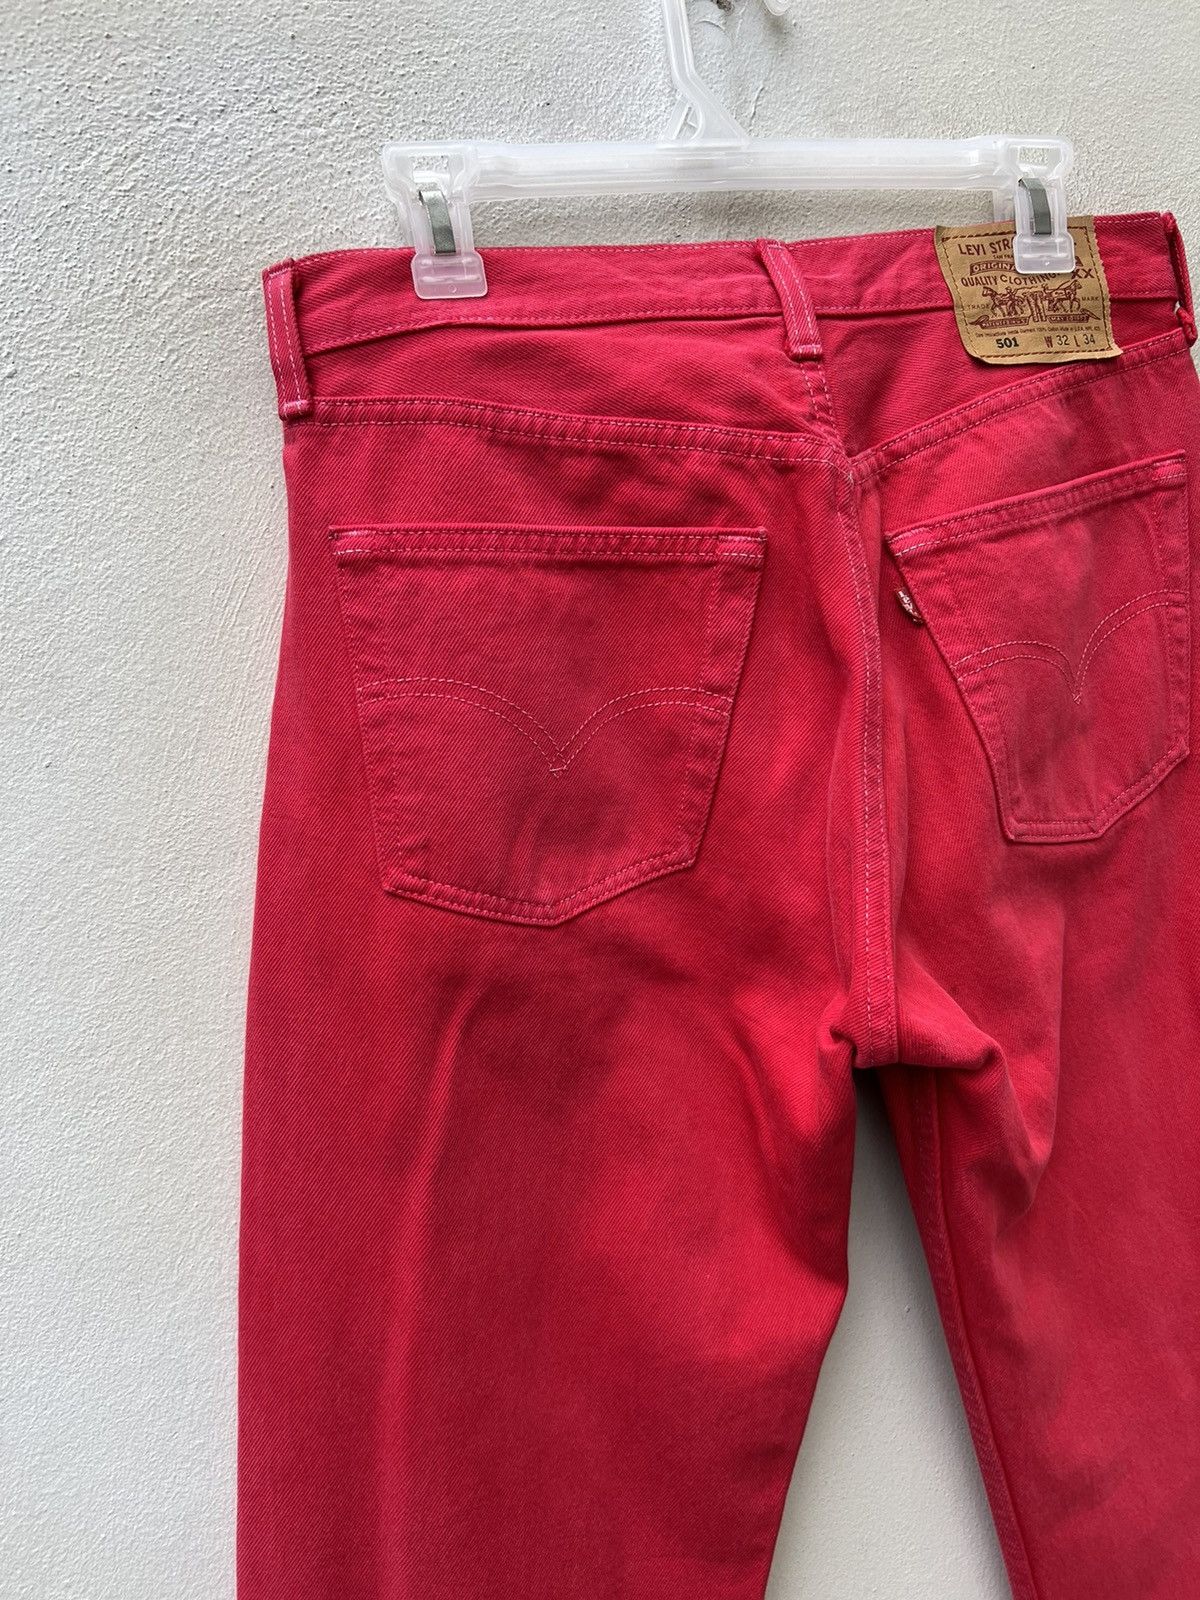 Vintage Vintage 1999 Levi’s 501 Fade Red Denim Jeans Size US 31 - 15 Thumbnail